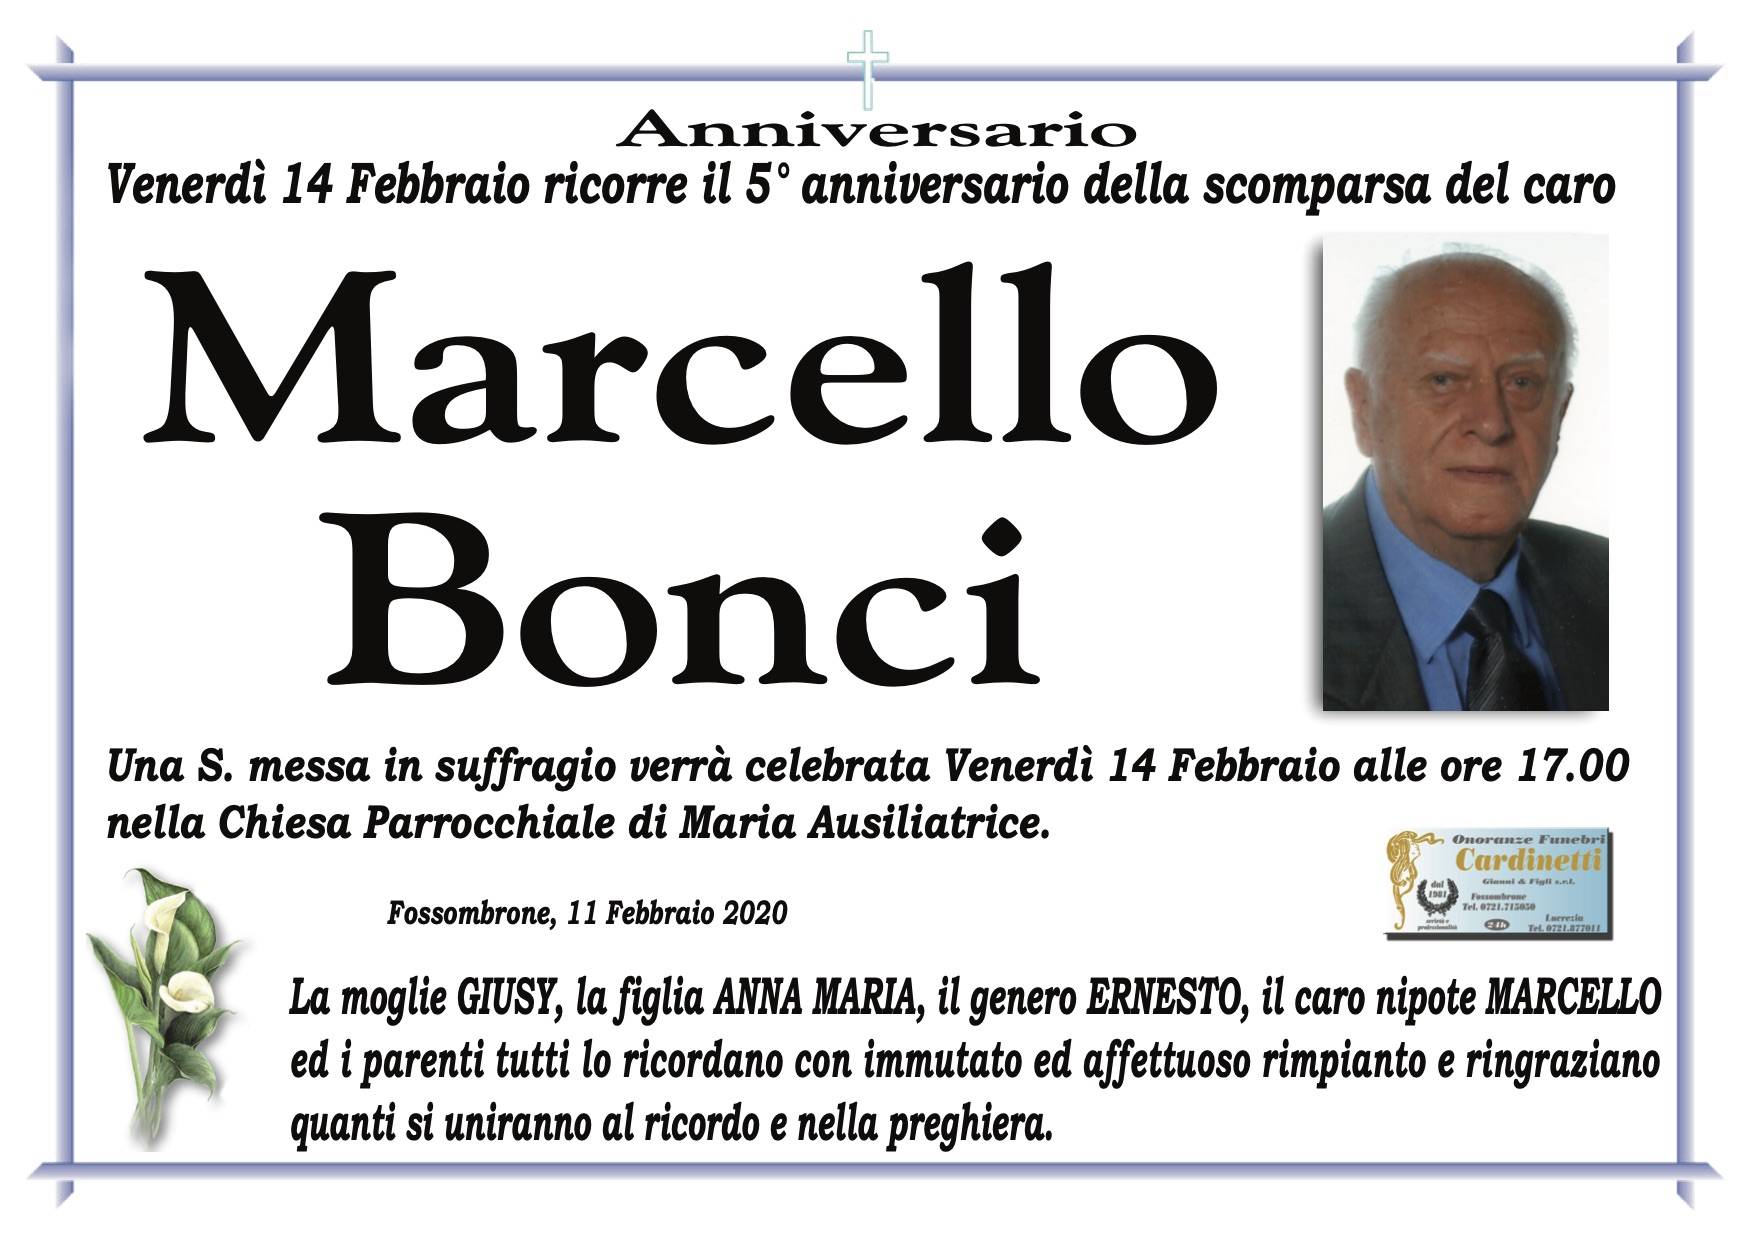 Marcello Bonci